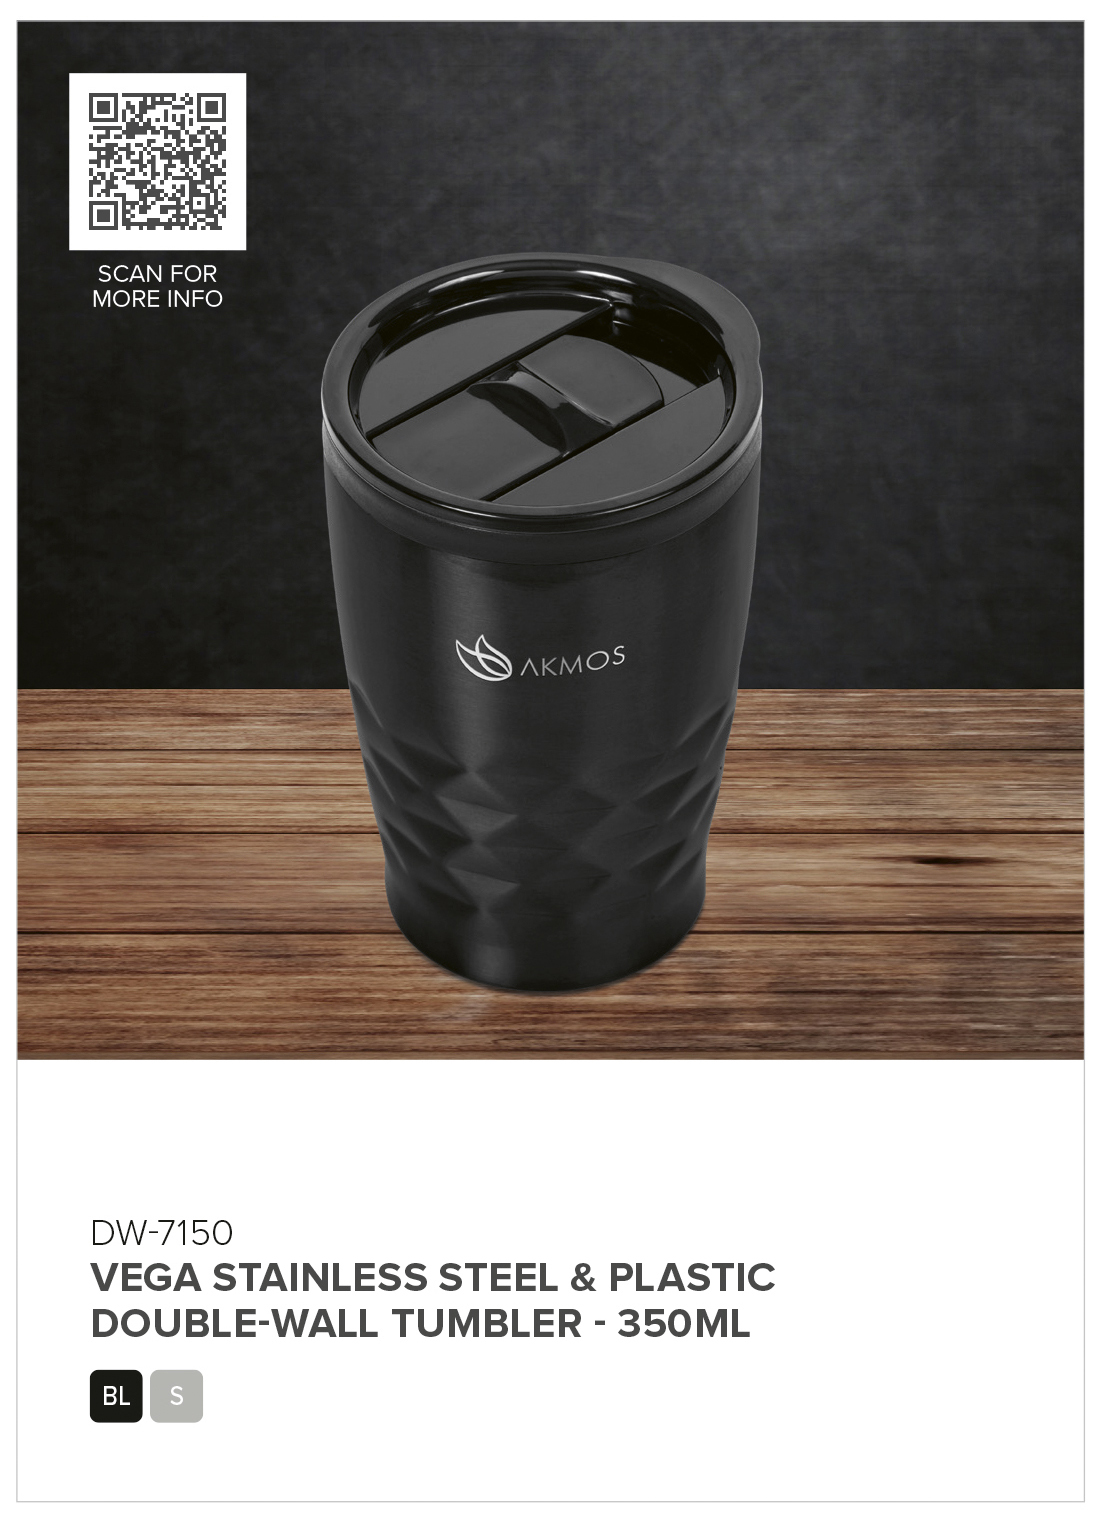 Vega Stainless Steel & Plastic Double-Wall Tumbler – 350ml